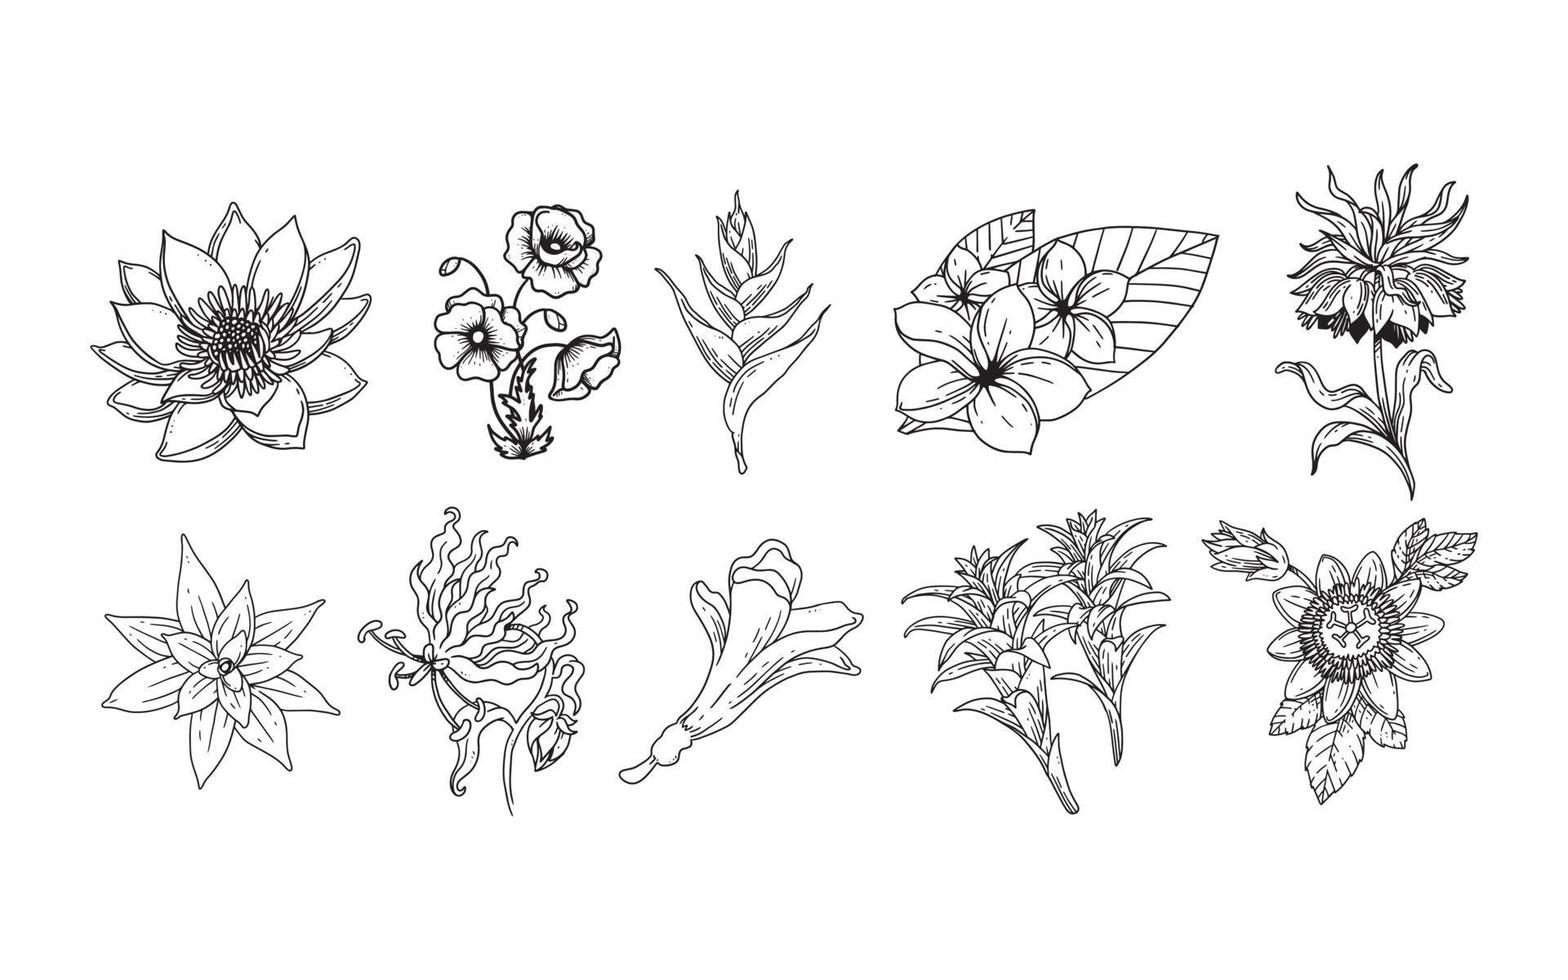 set handgetekende bloemenelementen voor uw ontwerp, blad en bloemenillustratie om romantisch of vintage design te creëren, plant geïsoleerde afbeelding zeer eenvoudig toe te voegen aan uw ontwerpproject vector